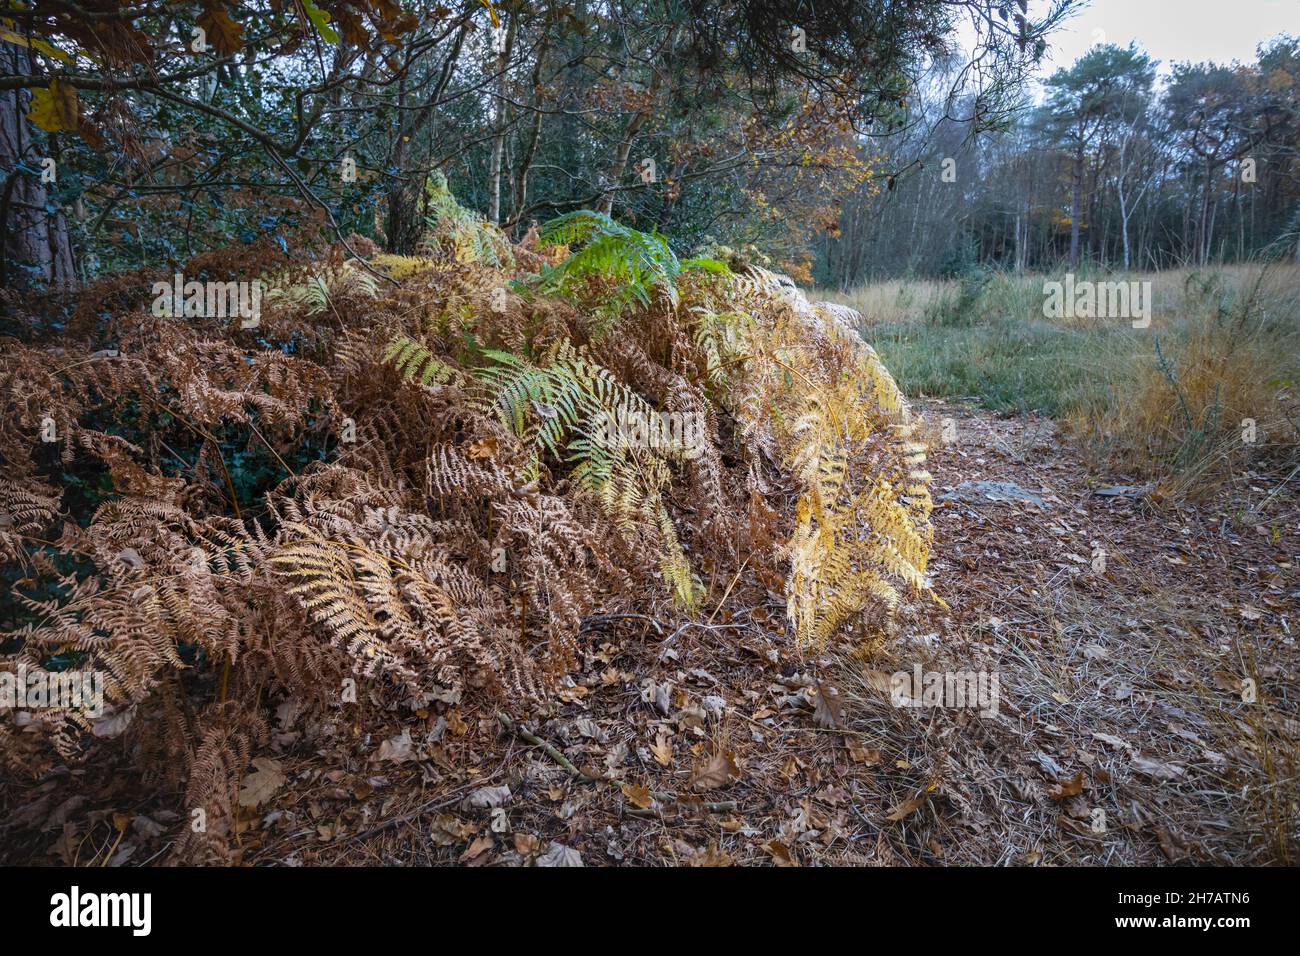 Fougères brunes et frondes saumâtres mourant de nouveau à la fin de l'automne au début de l'hiver dans les bois sur Smart's Heath Common.Woking, Surrey, sud-est de l'Angleterre Banque D'Images